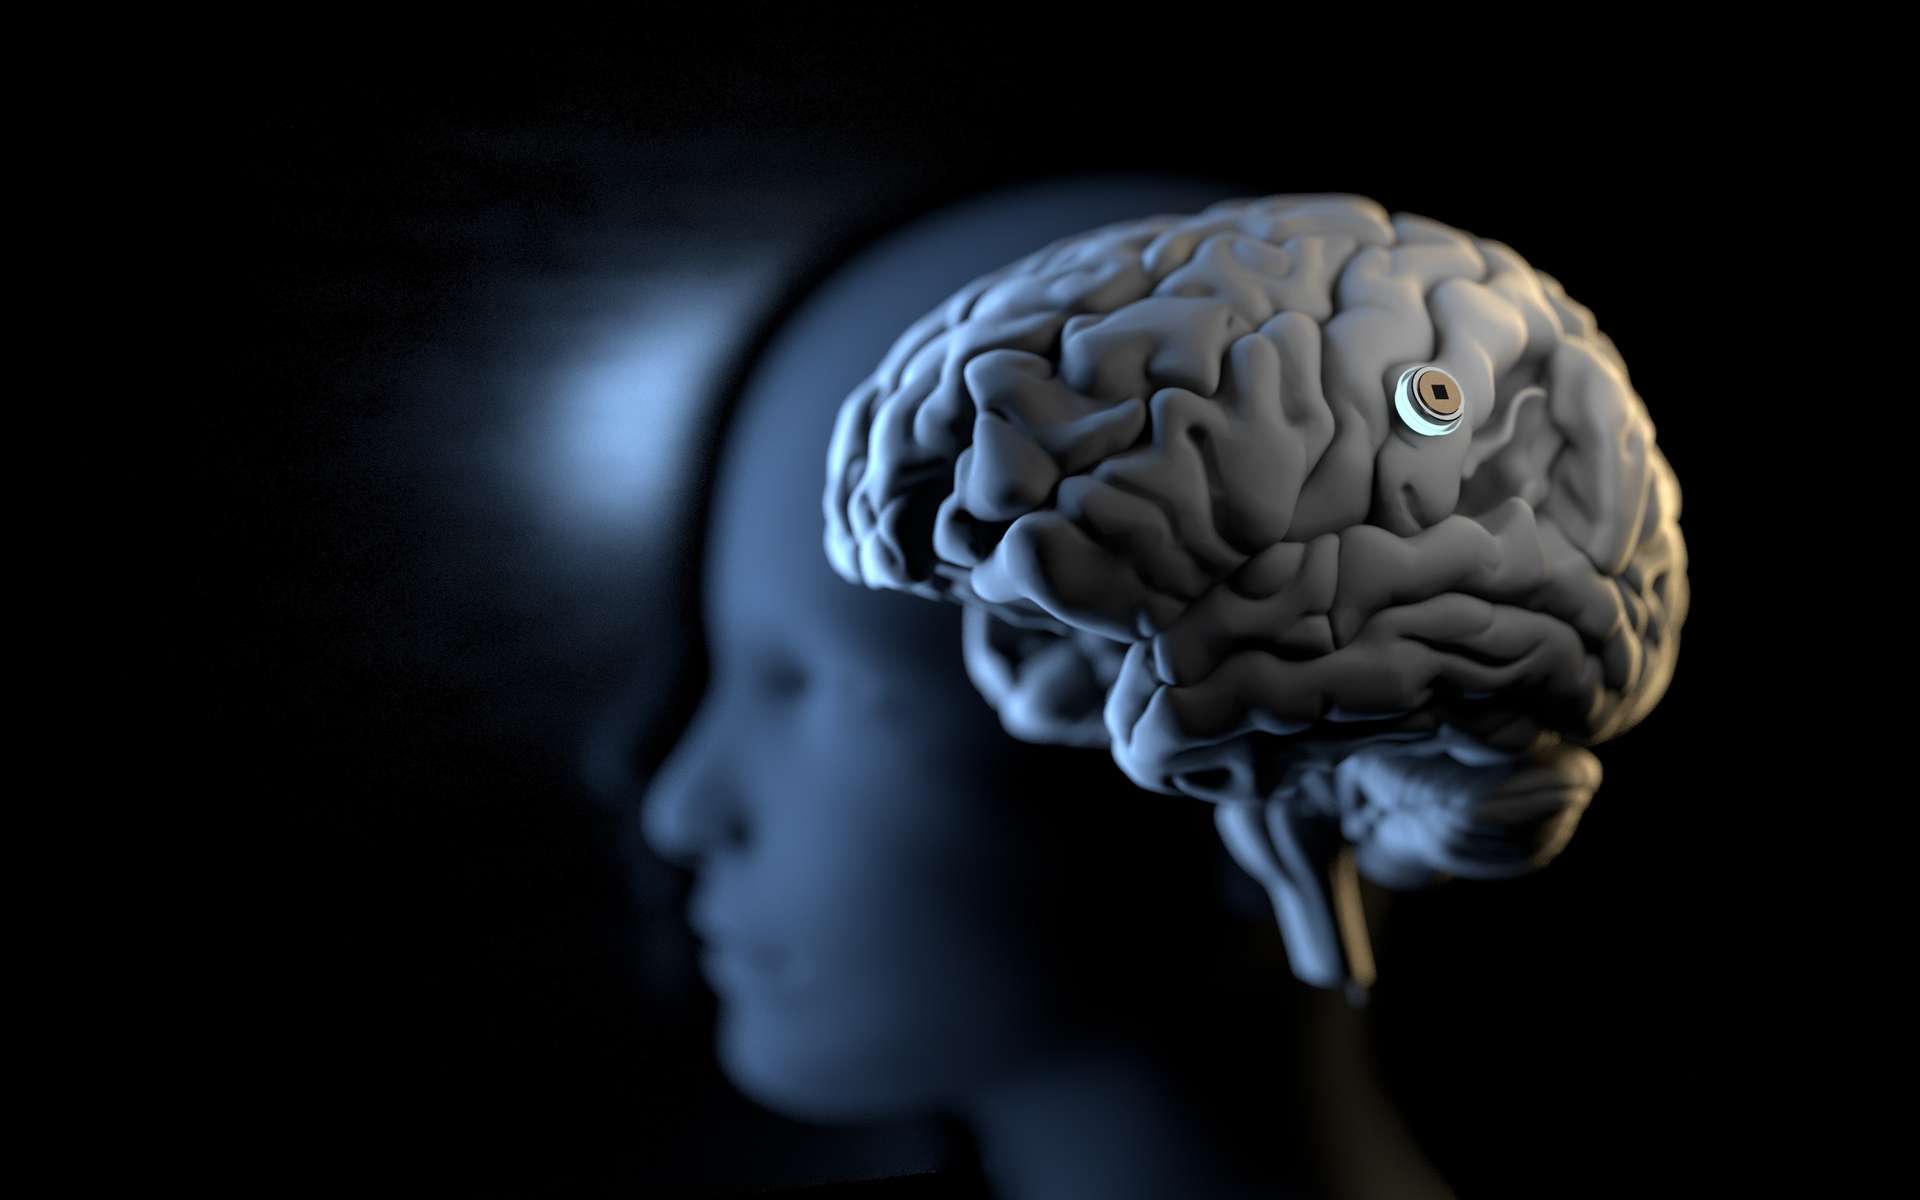 Les implants cérébraux représentent-ils un risque pour la santé ?